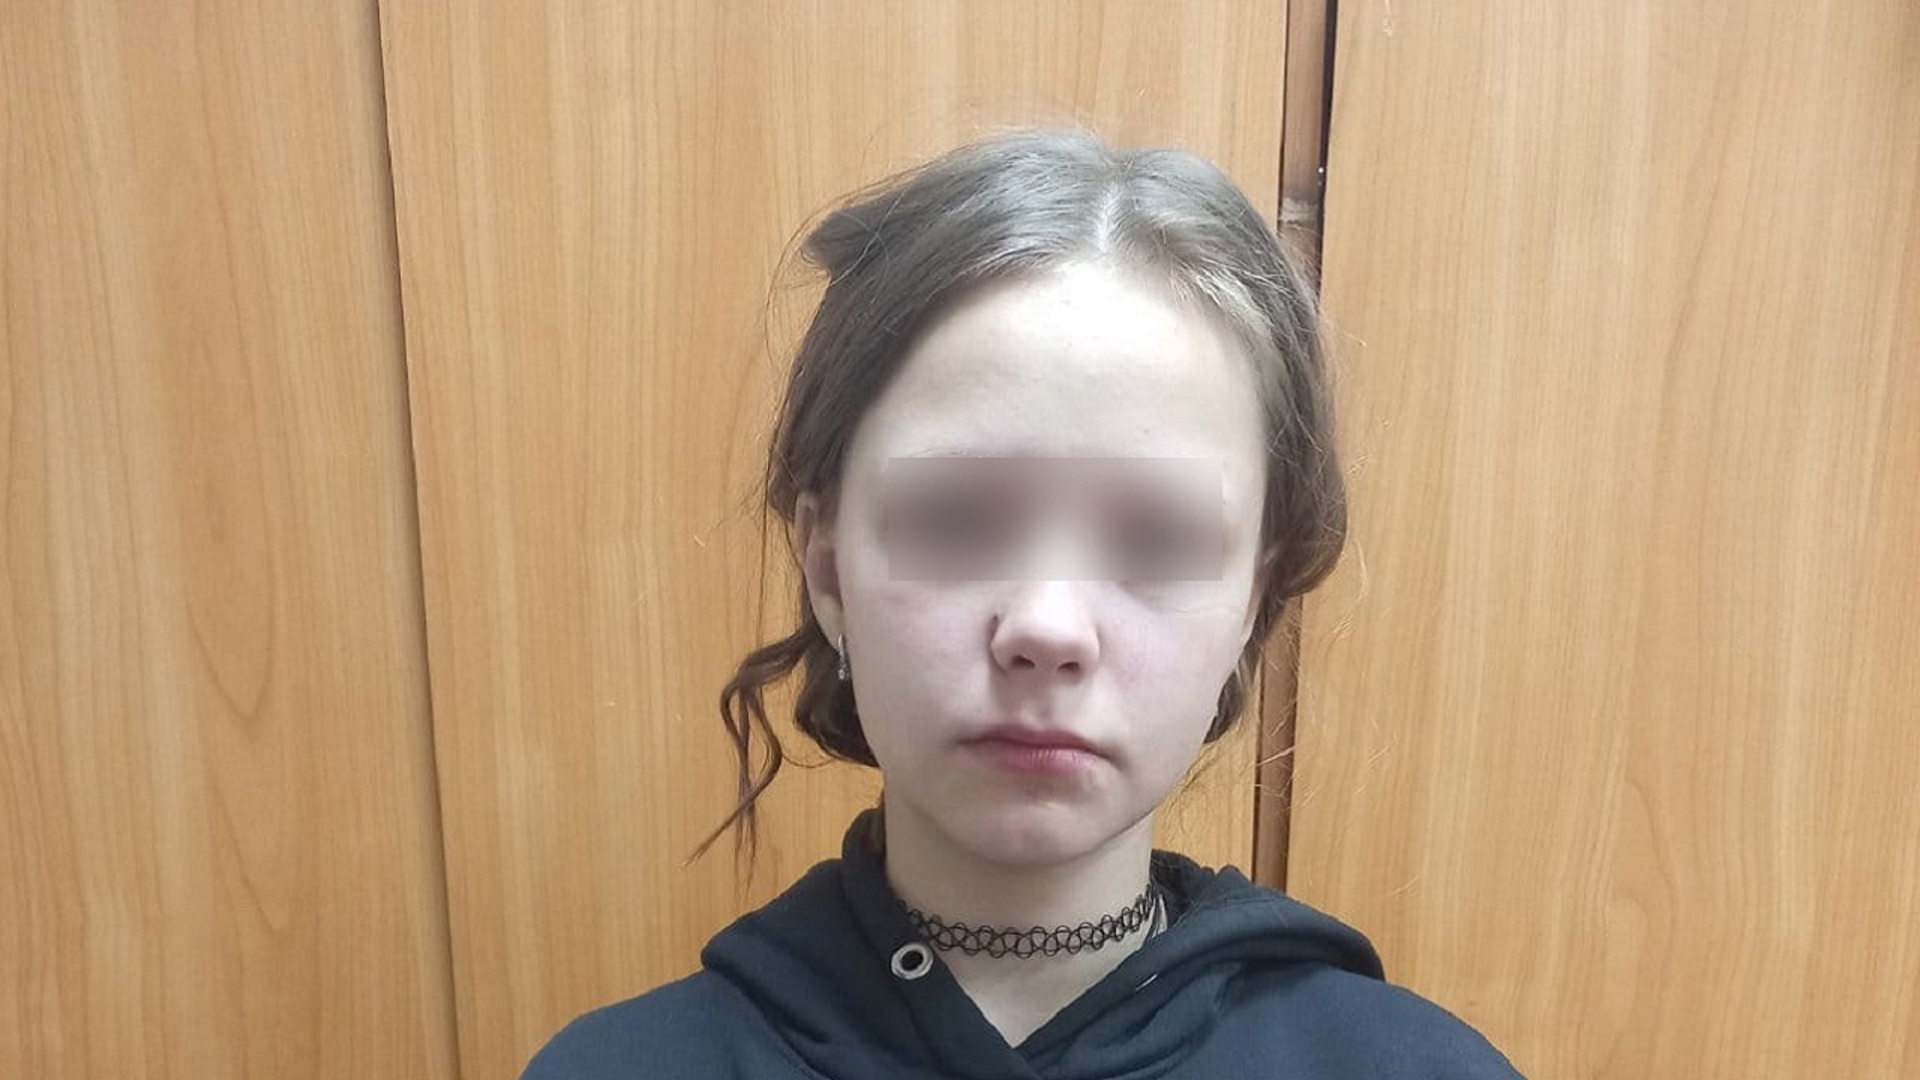 9 мужчин 13 летняя девочка видео. 13-Летняя ученица. Пропажа девочки в Челябинске.